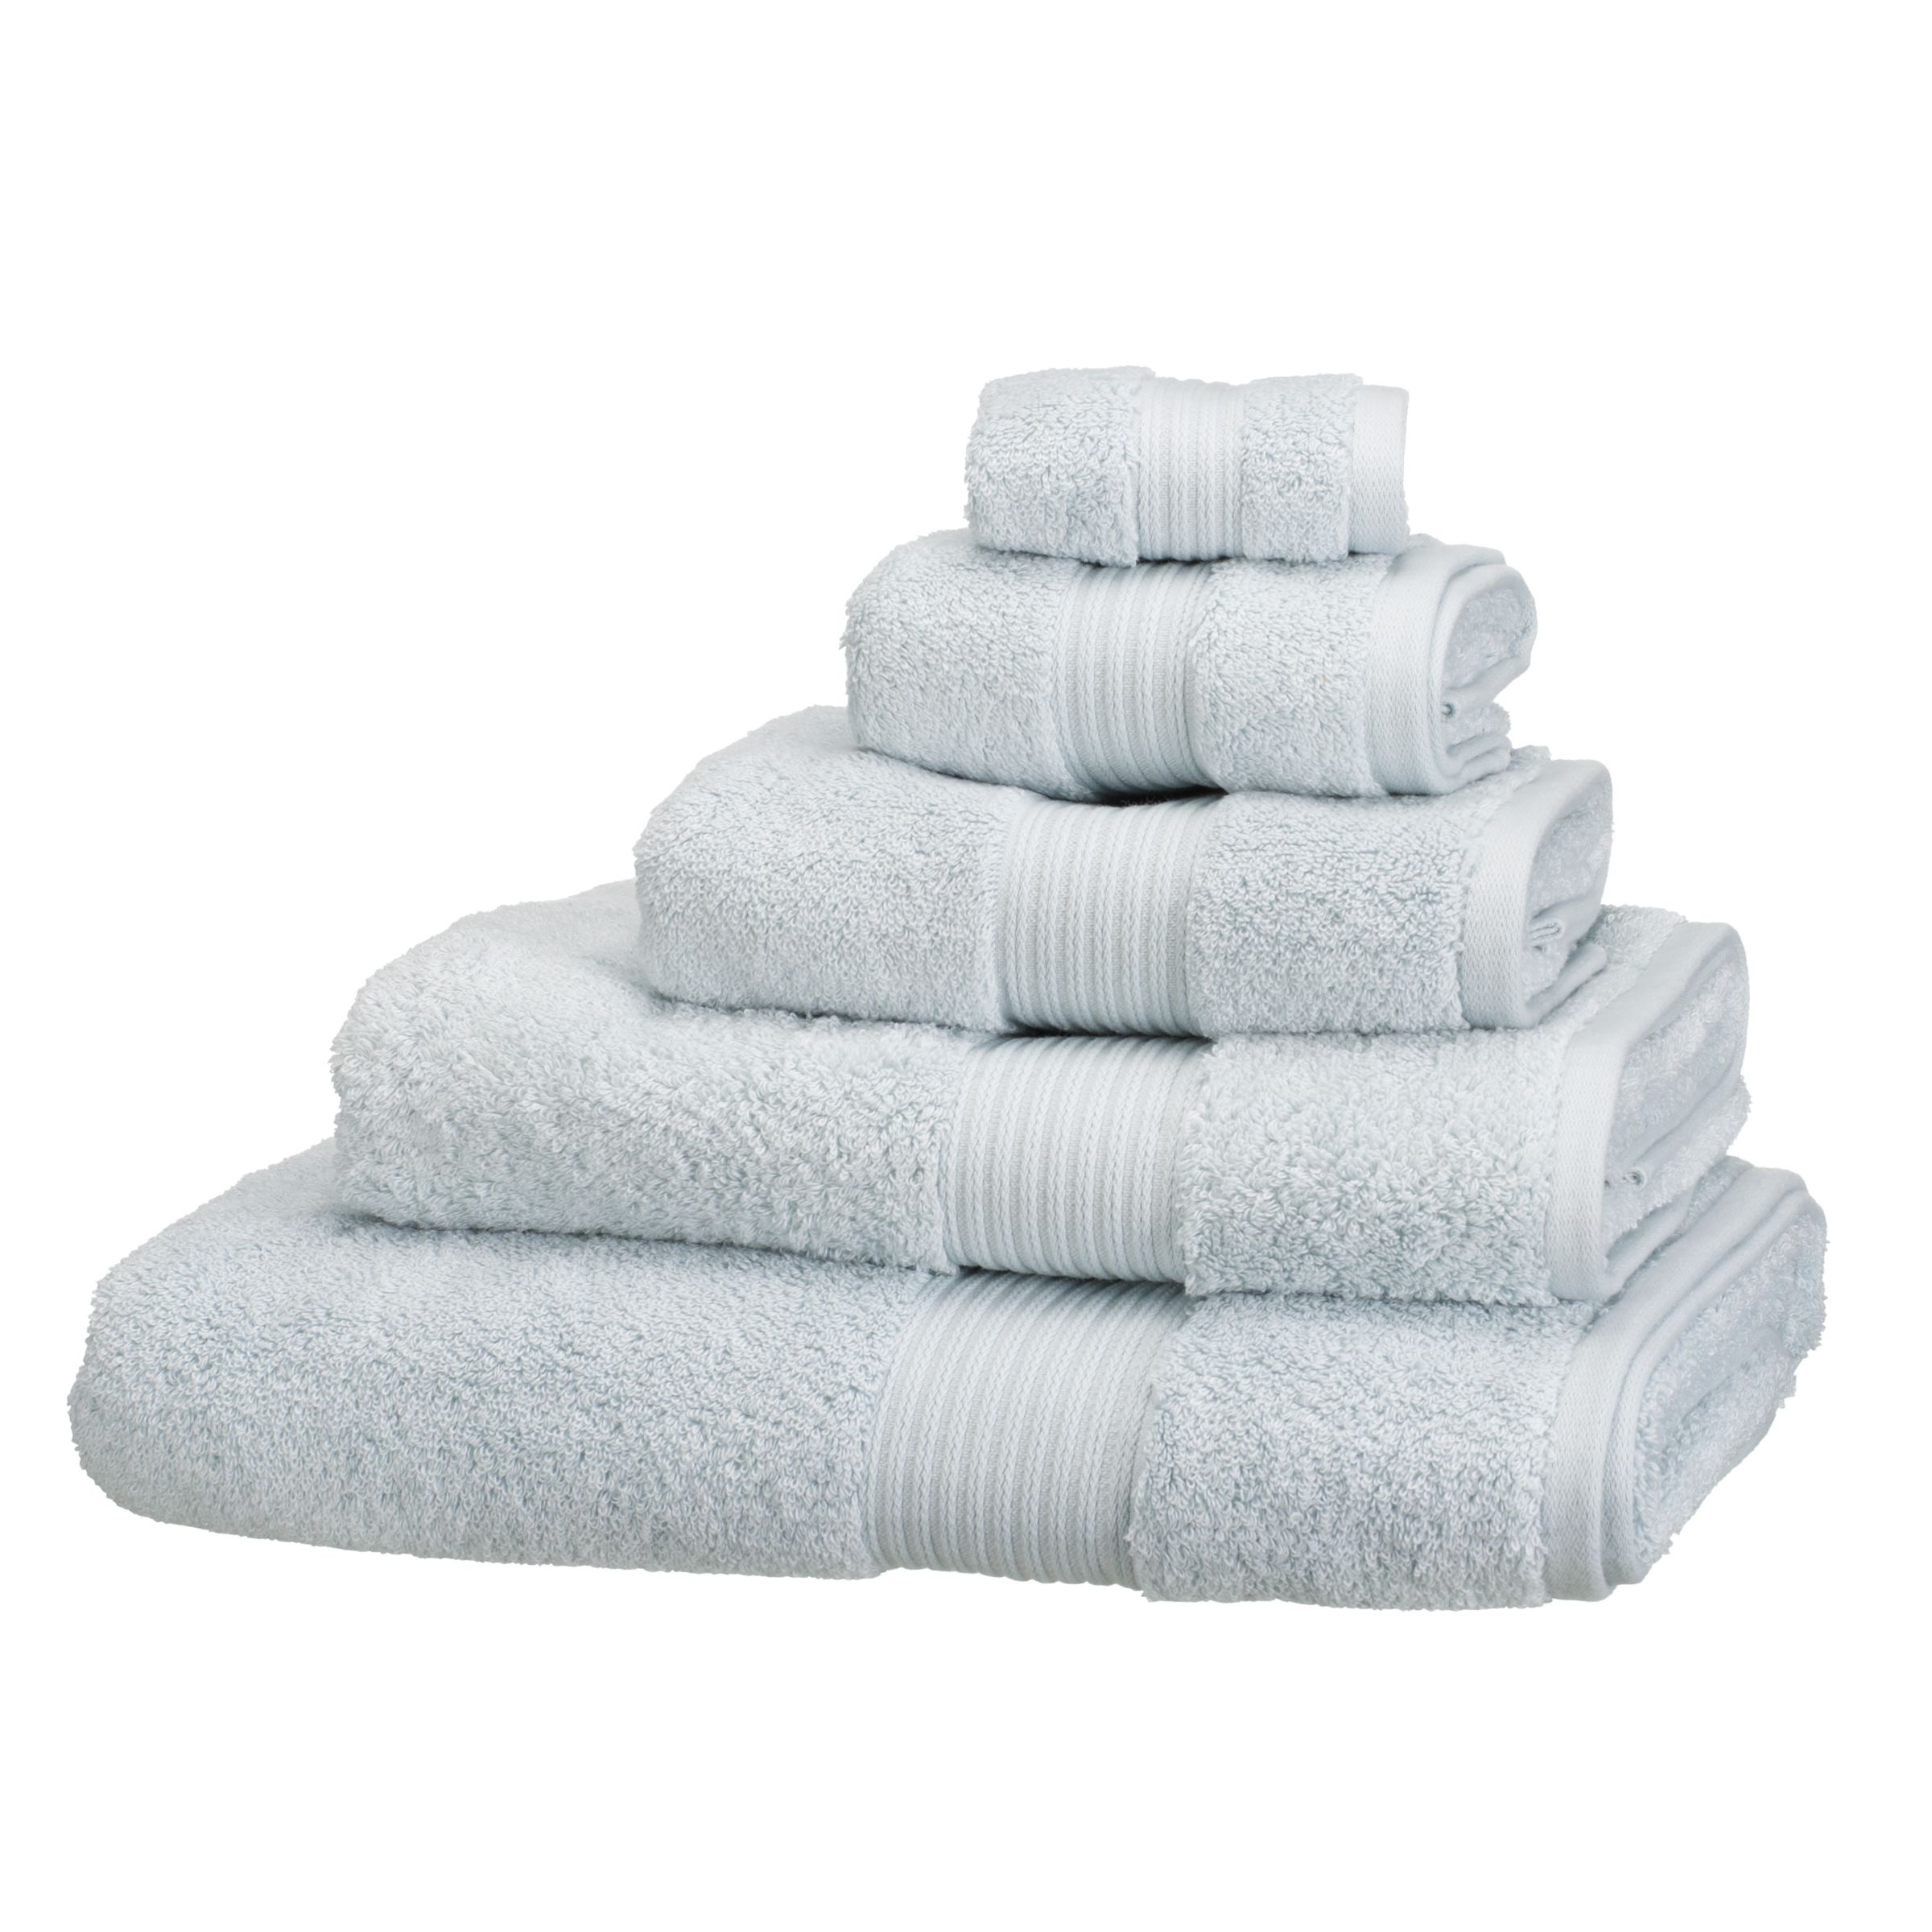 John Lewis Pure Cotton Towels, Duck Egg 109998